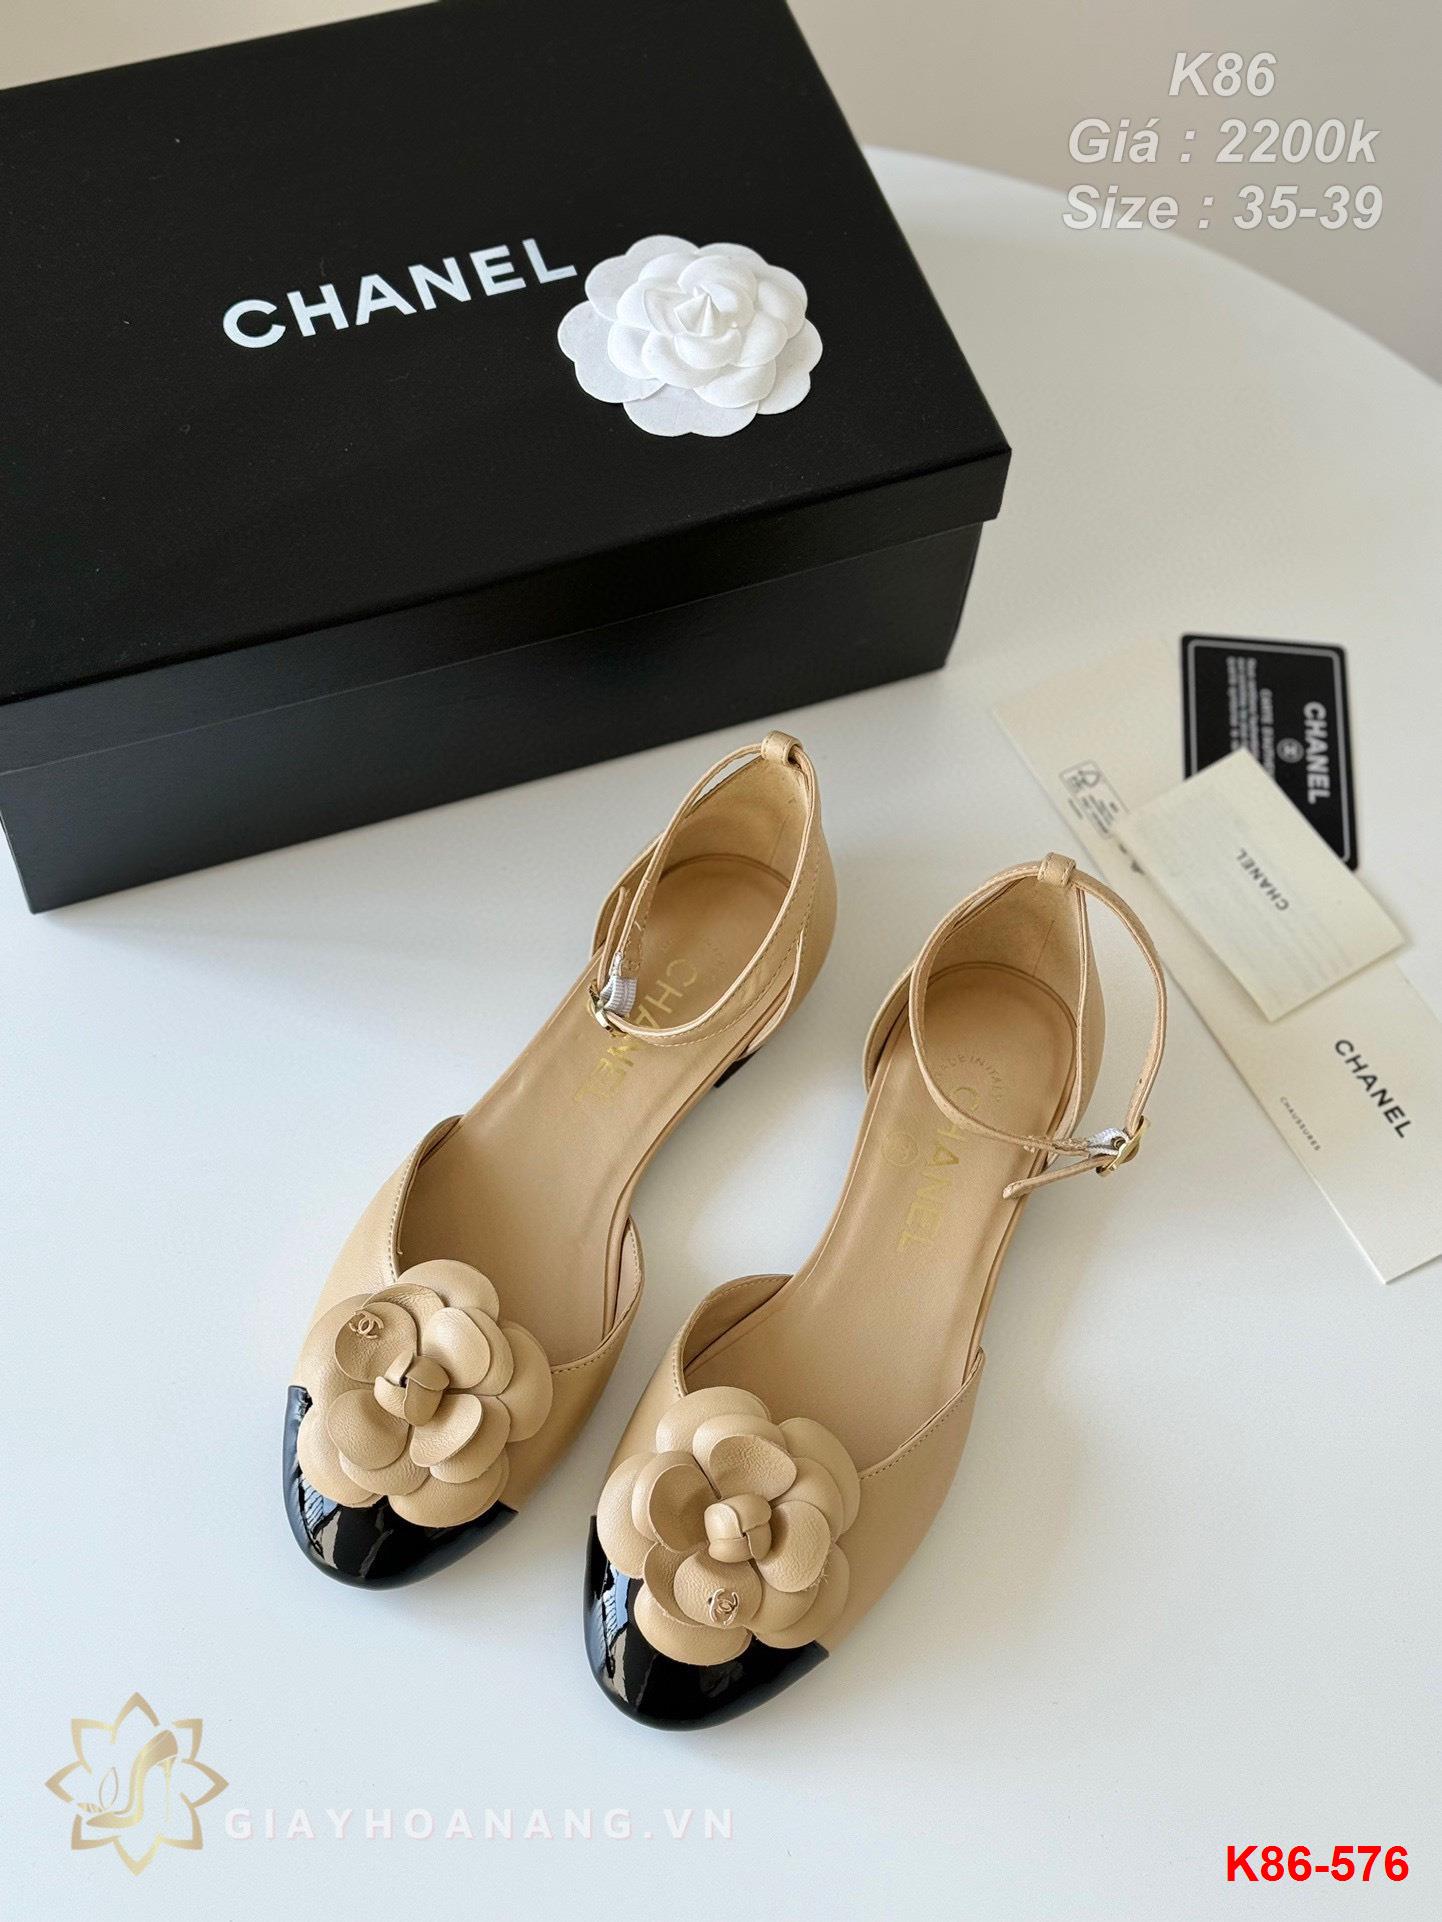 K86-576 Chanel sandal siêu cấp